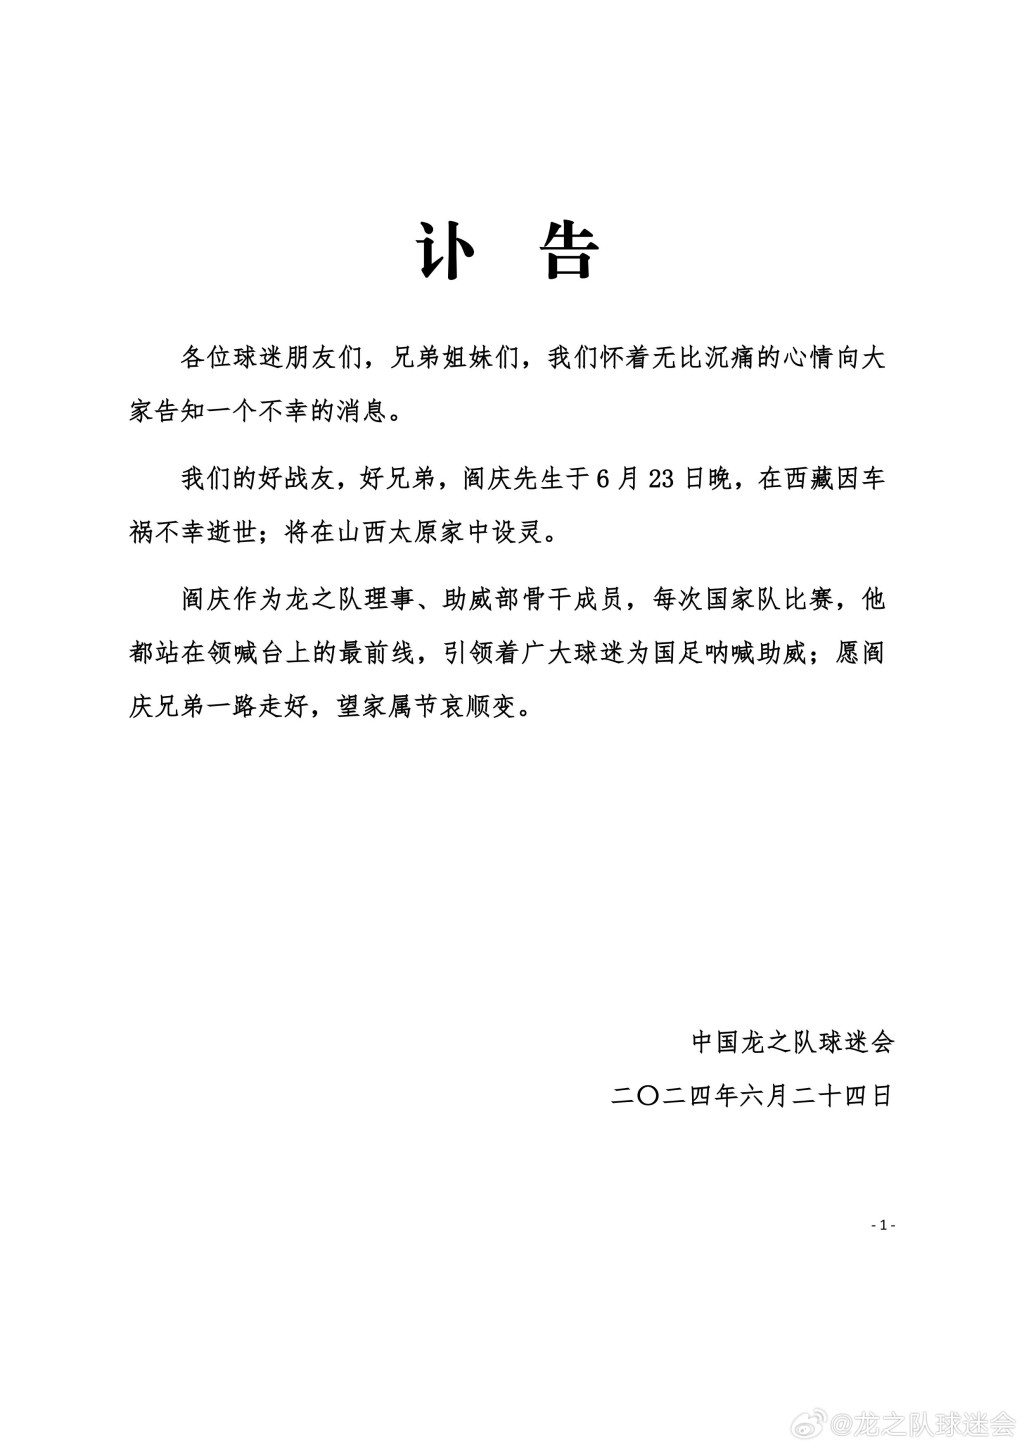 中國龍之隊球迷會為瘋子哥閻慶發訃告。